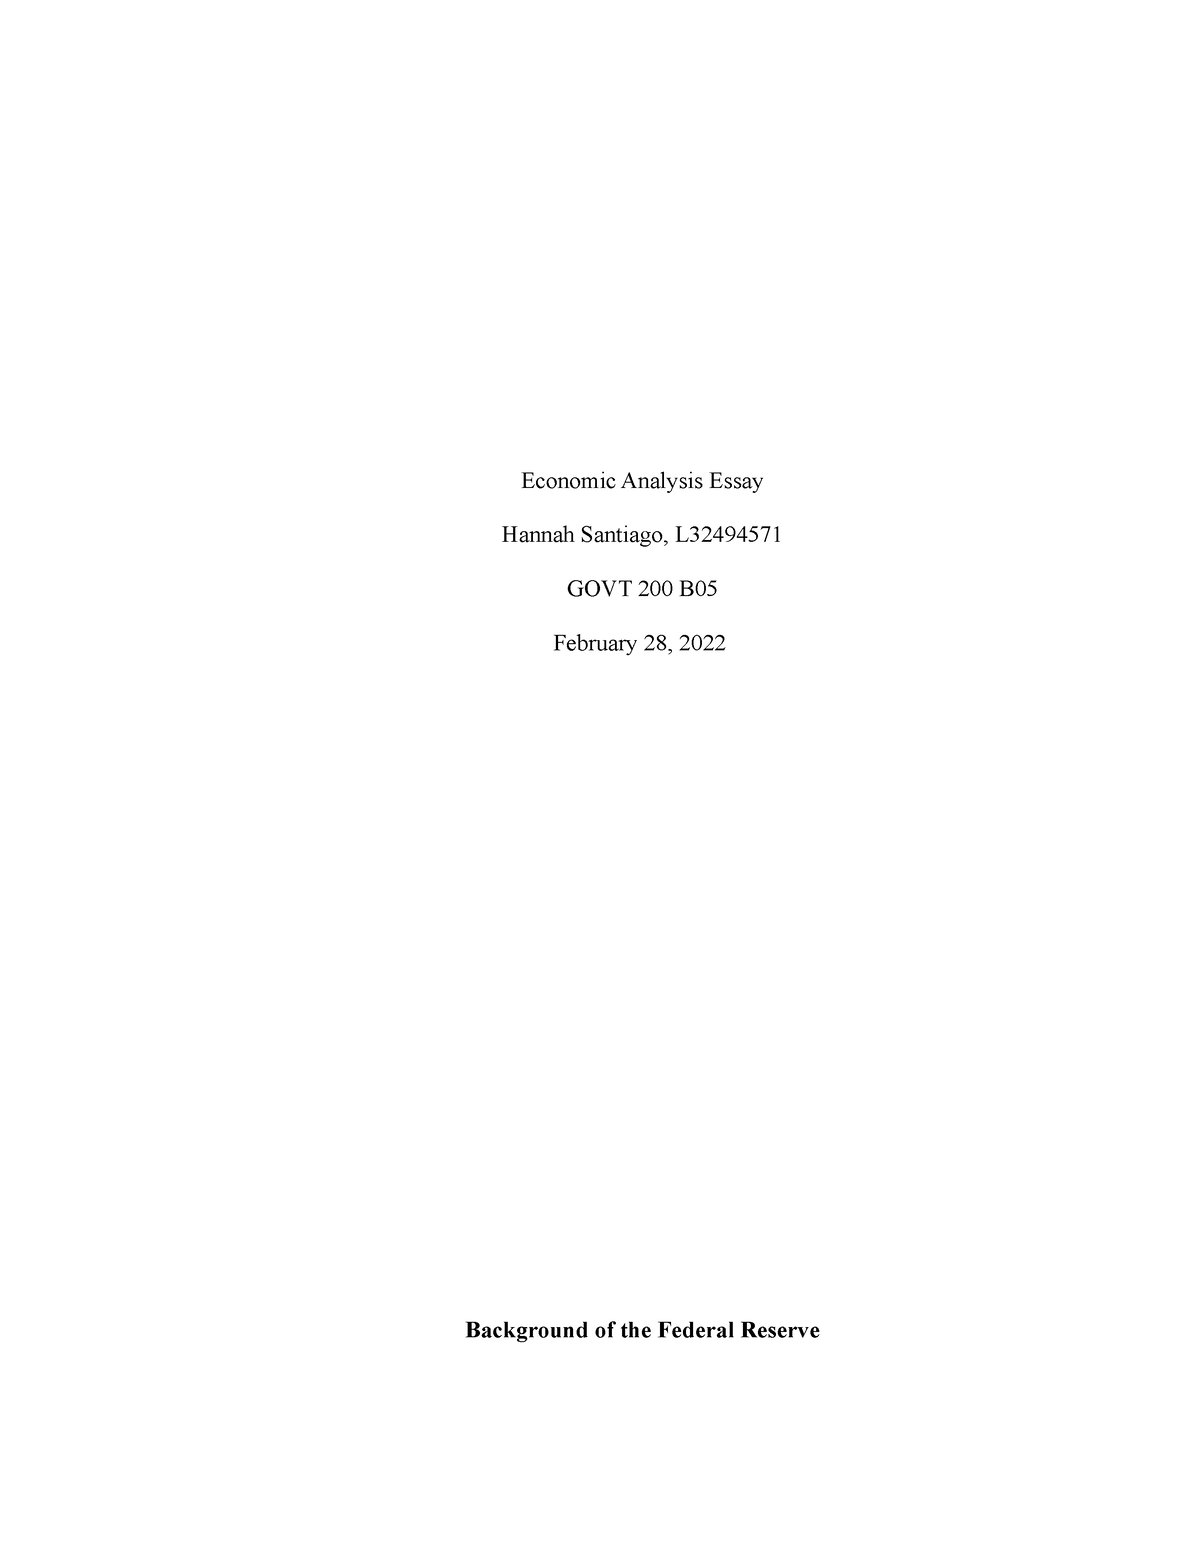 economic analysis essay govt 200